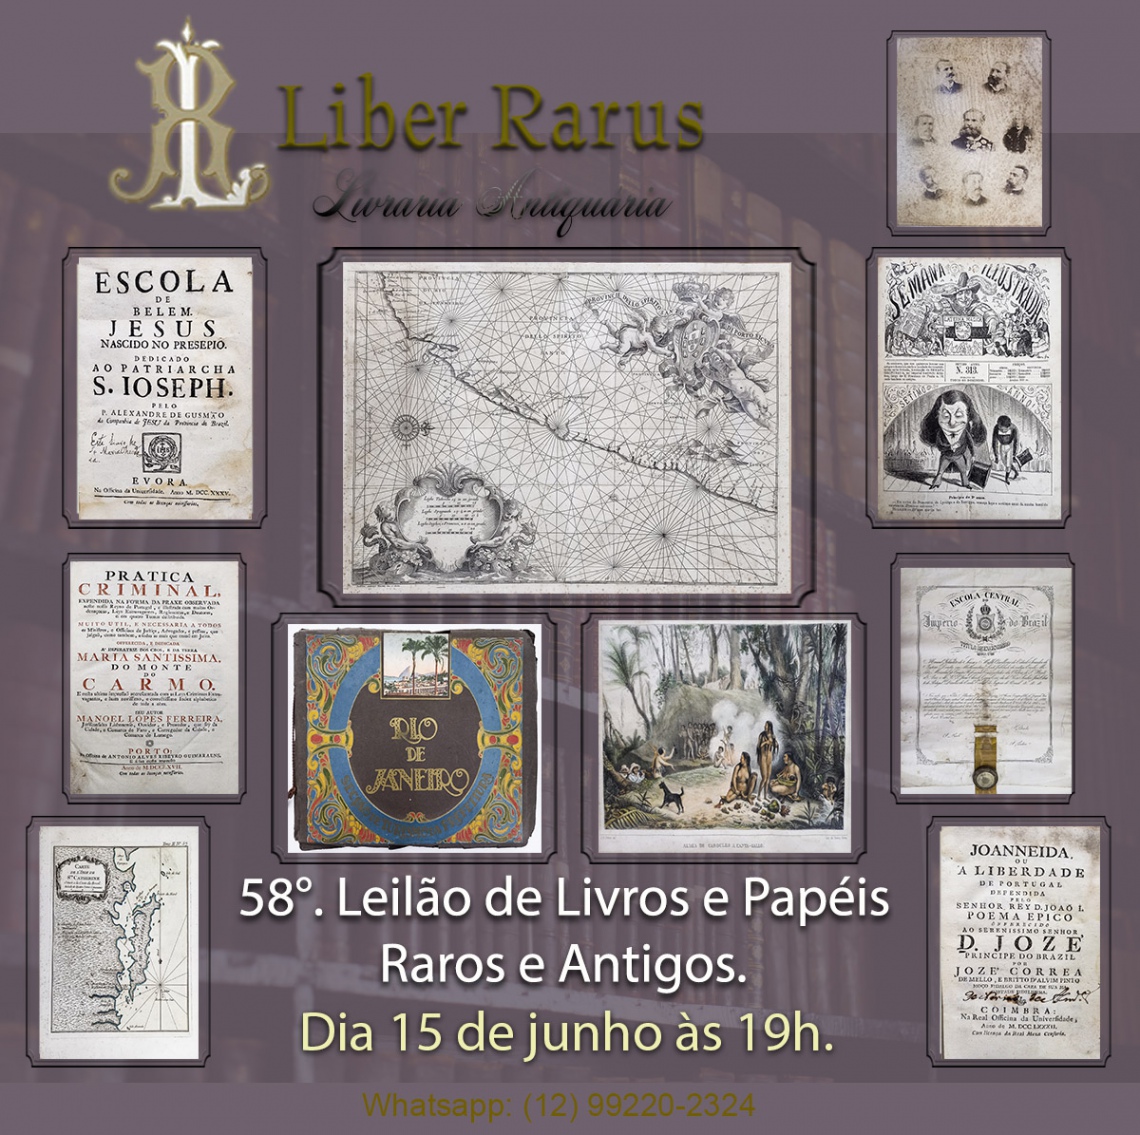 58º Leilão de Livros e Papéis Raros e Antigos - Liber Rarus